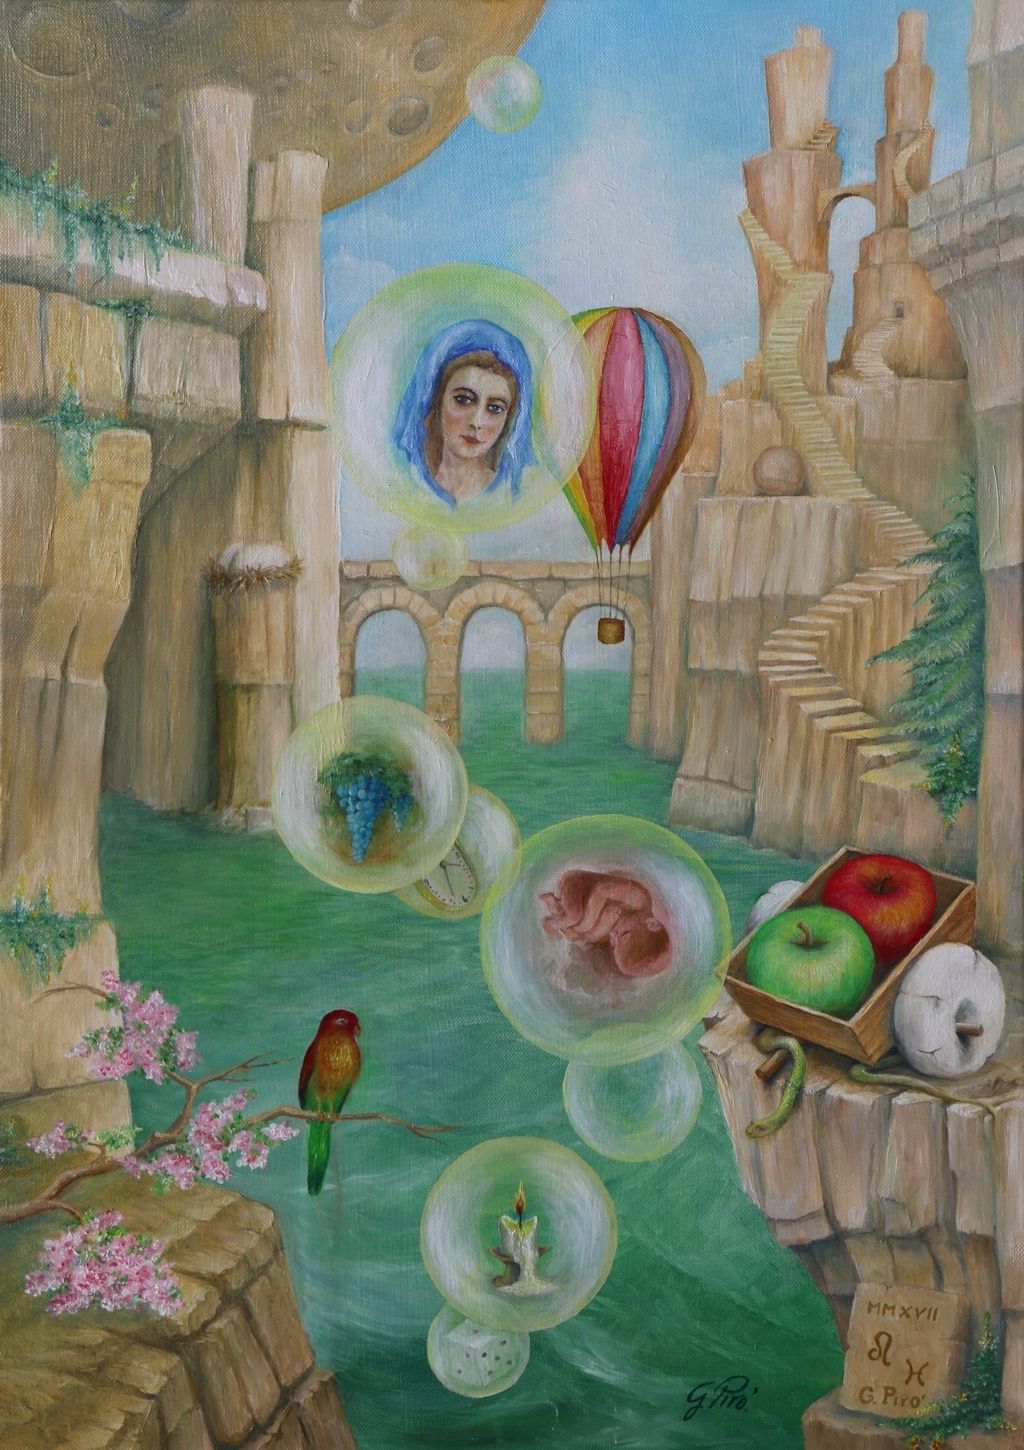 Öl auf Leinwand, Öl Gemälde, Surrealismus, Gregory Pyra Piro